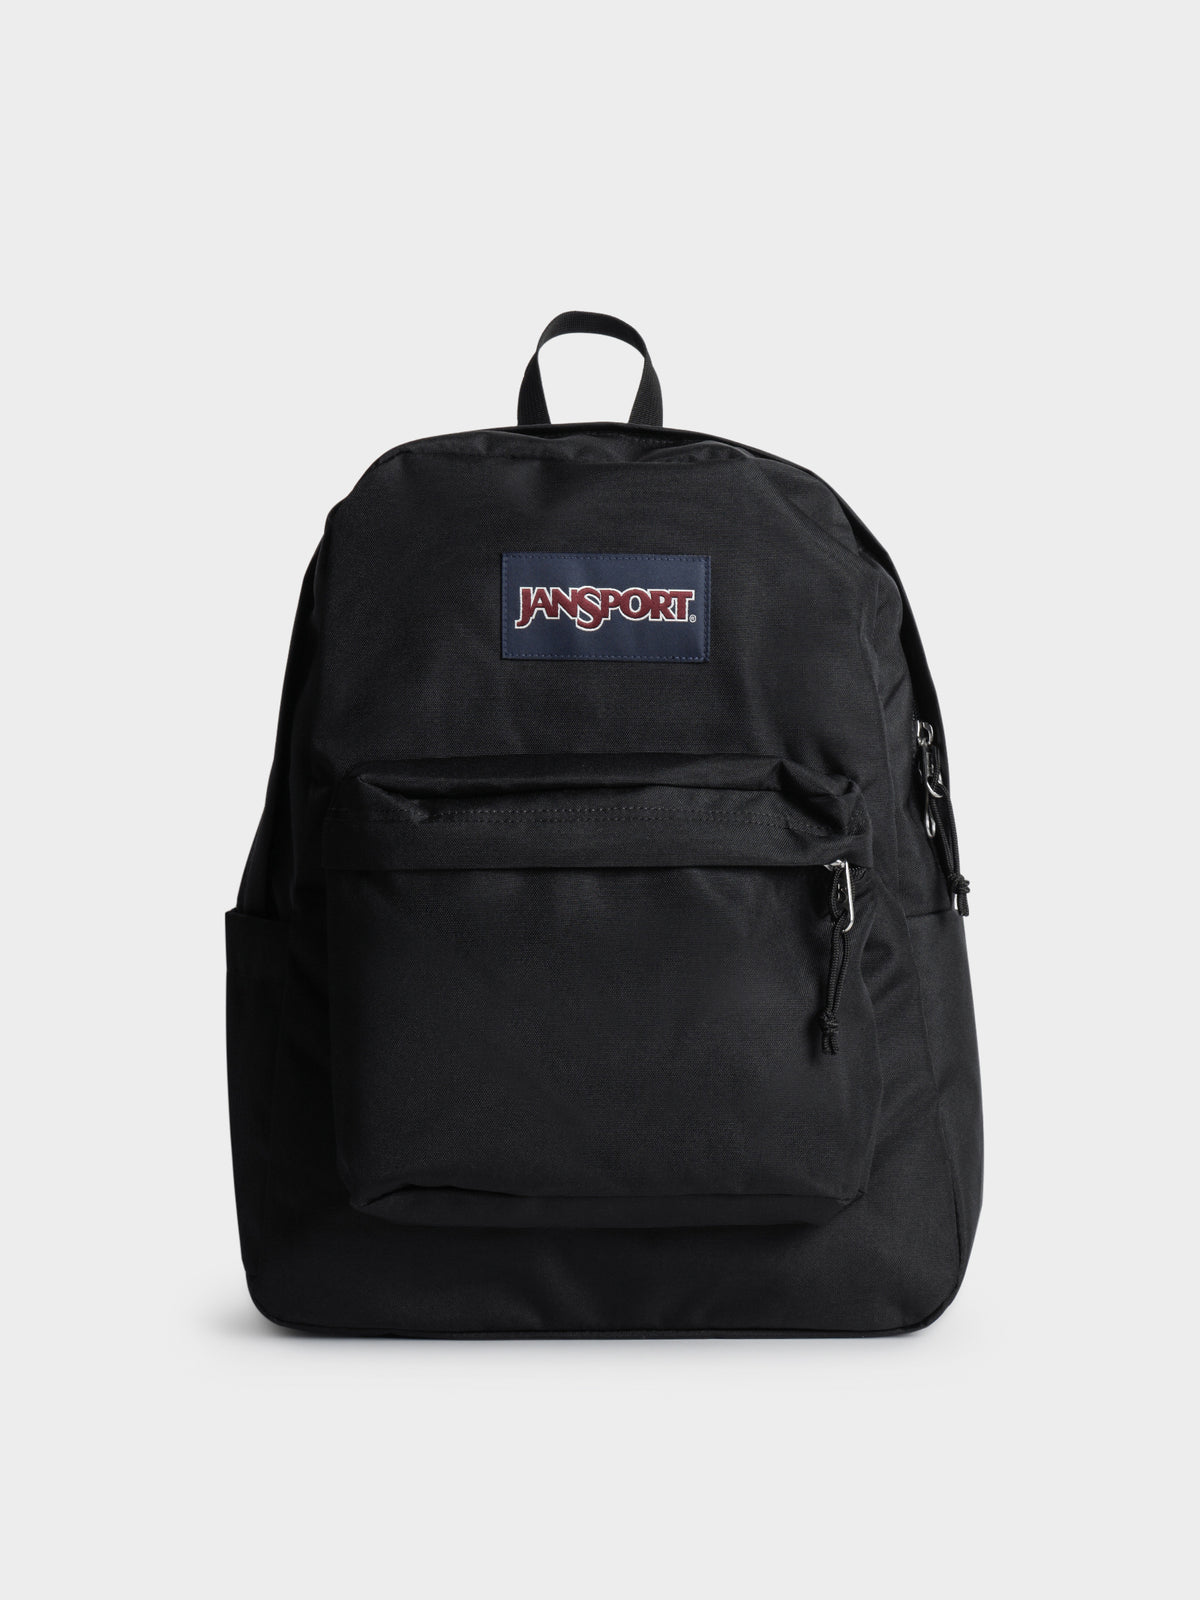 SuperBreak Plus Backpack in Black